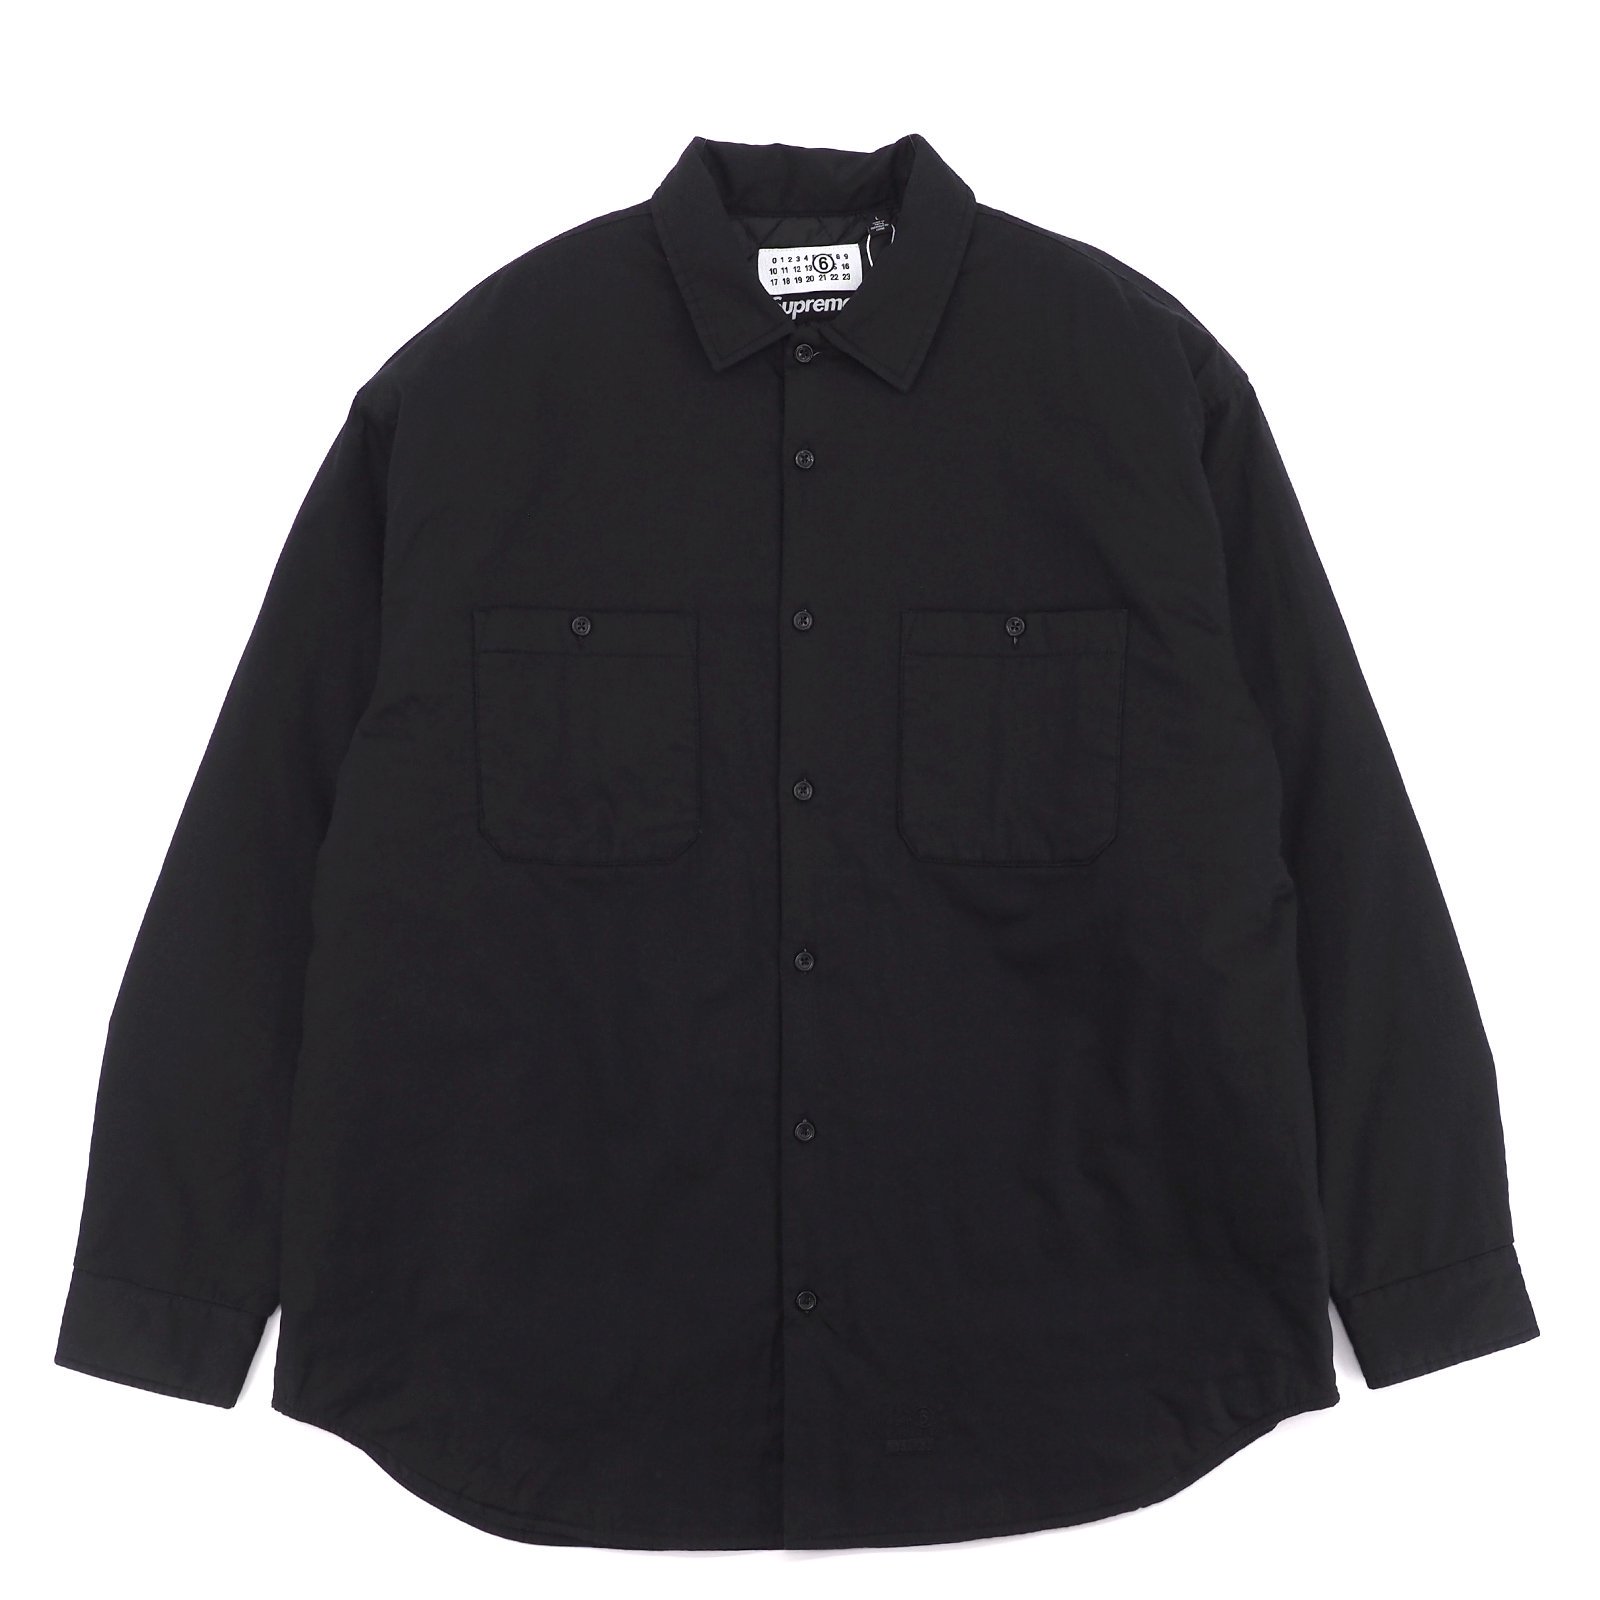 19,250円Supreme/MM6 Maison Margiela Padded Shirt